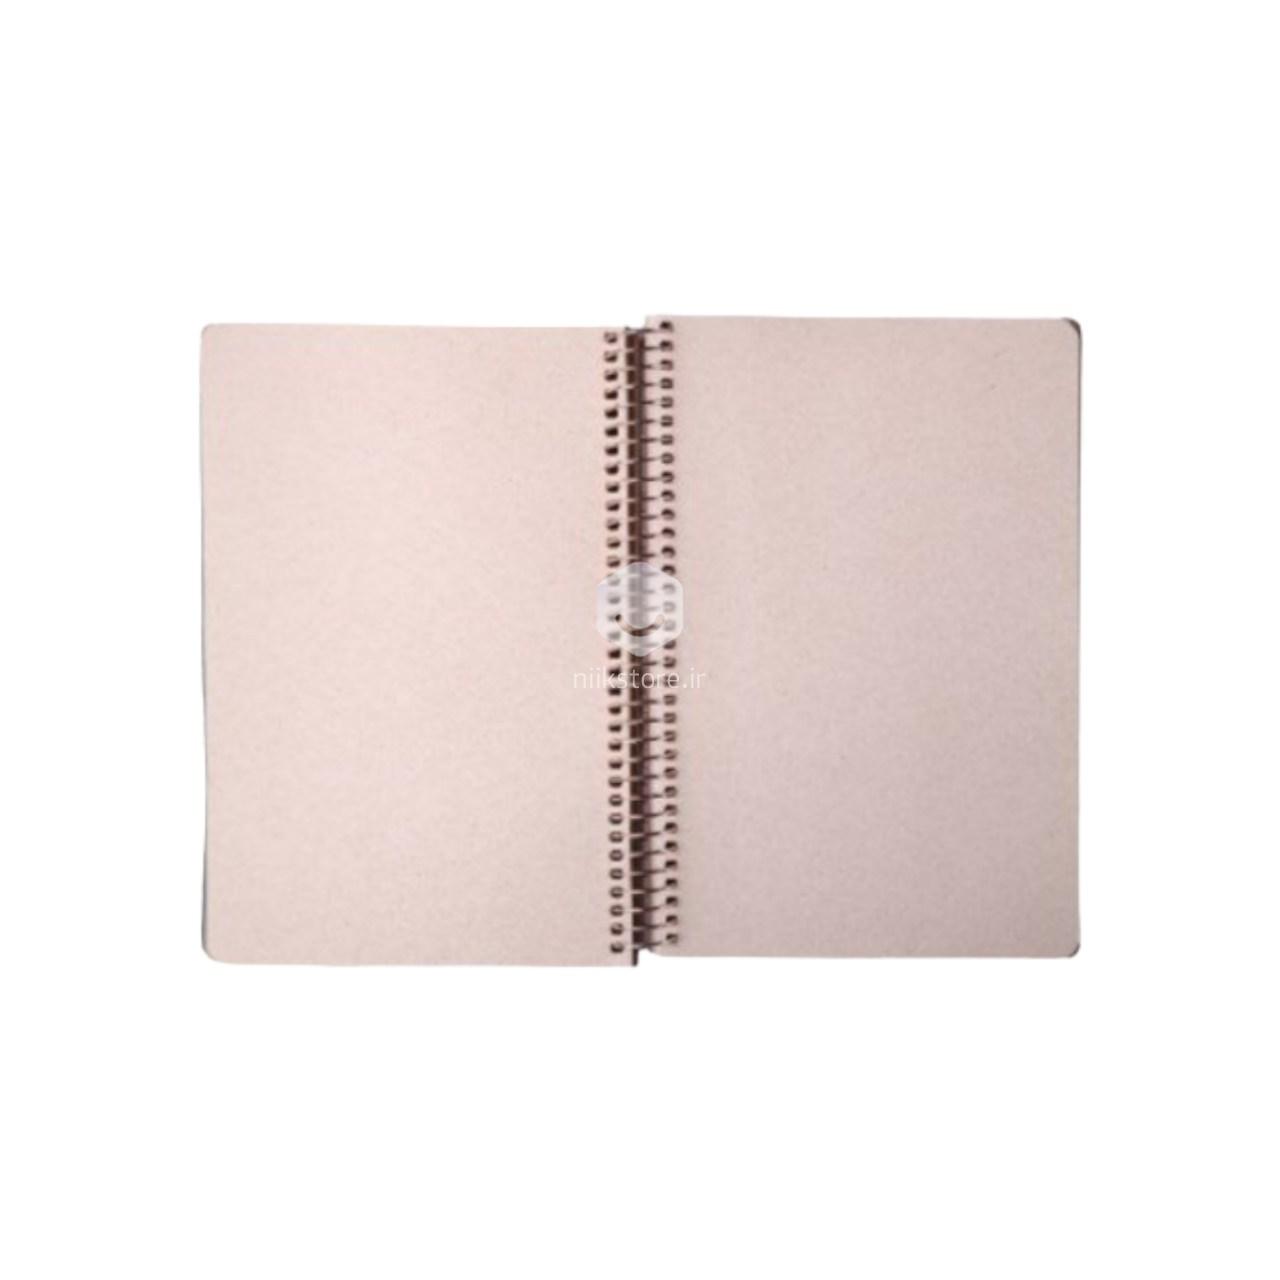 دفتر یادداشت طراحی 1/8 کاغذ کرم سویل سری مینیمال کد 211/1 محصول